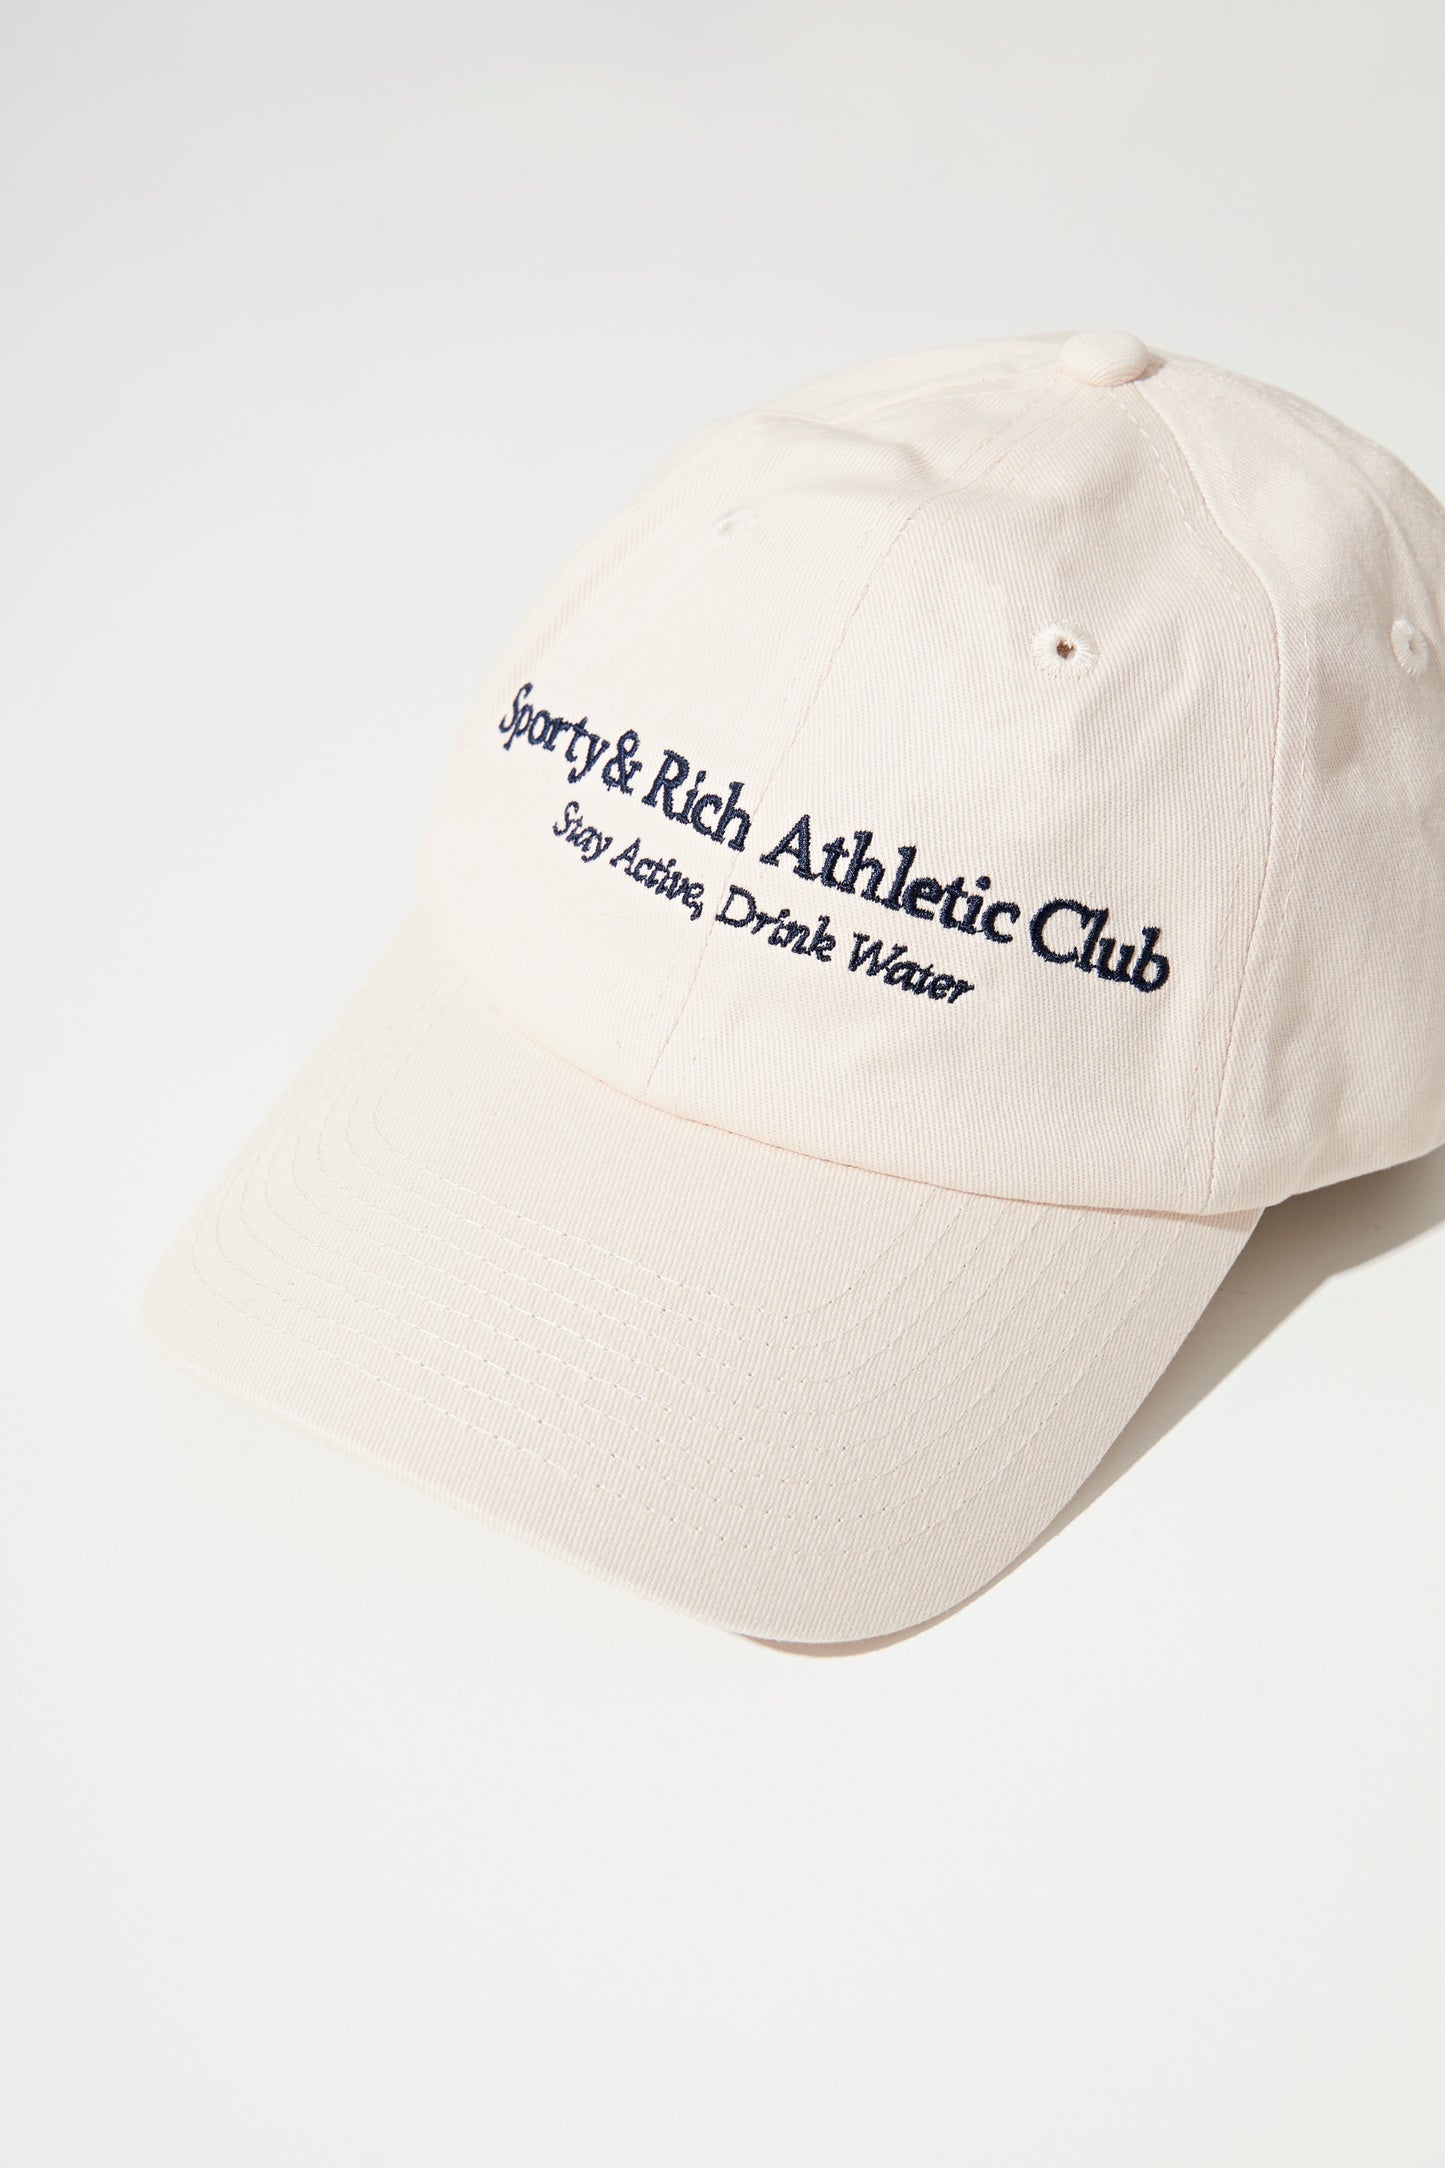 ATHLETIC CLUB HAT